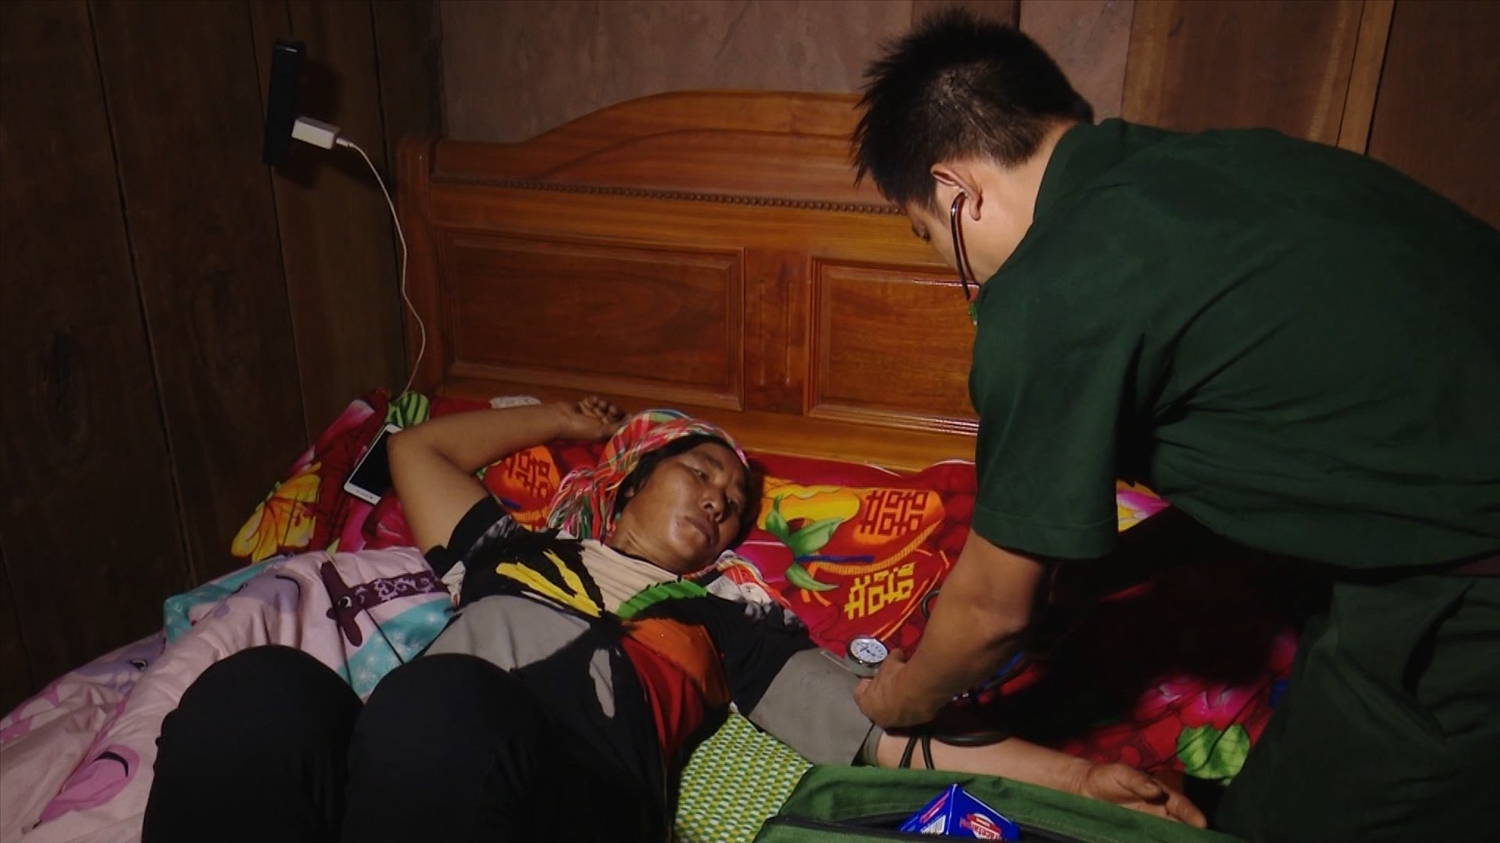 Trong thời gian qua, Bộ đội Biên phòng tỉnh Điện Biên đã tiến hành khám, chữa bệnh, cấp thuốc cho gần 3.000 lượt cán bộ, người dân các cụm bản giáp biên của Lào